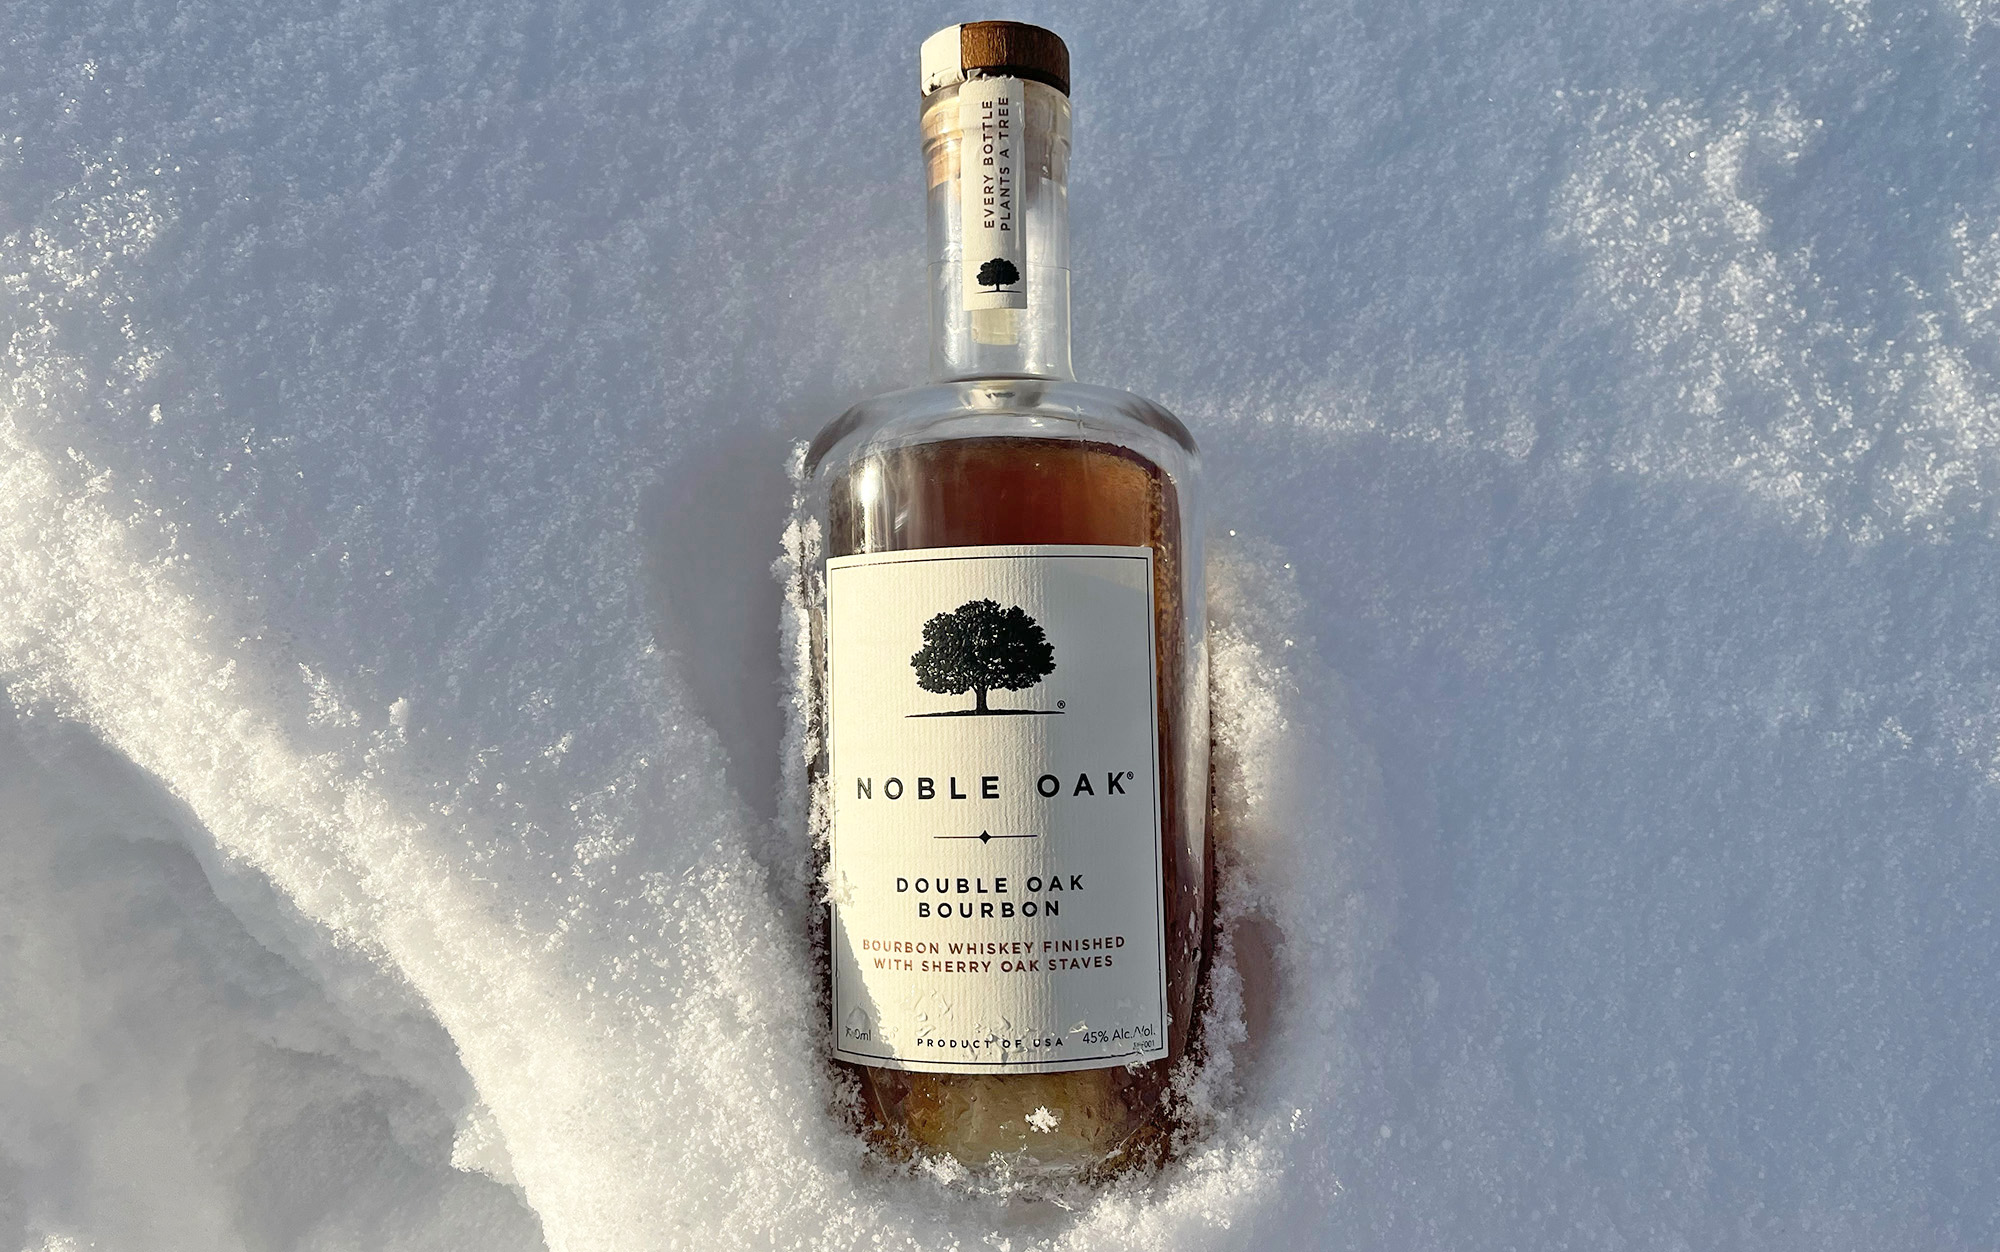 Noble Oak Double Oak Bourbon is the best for peaks.